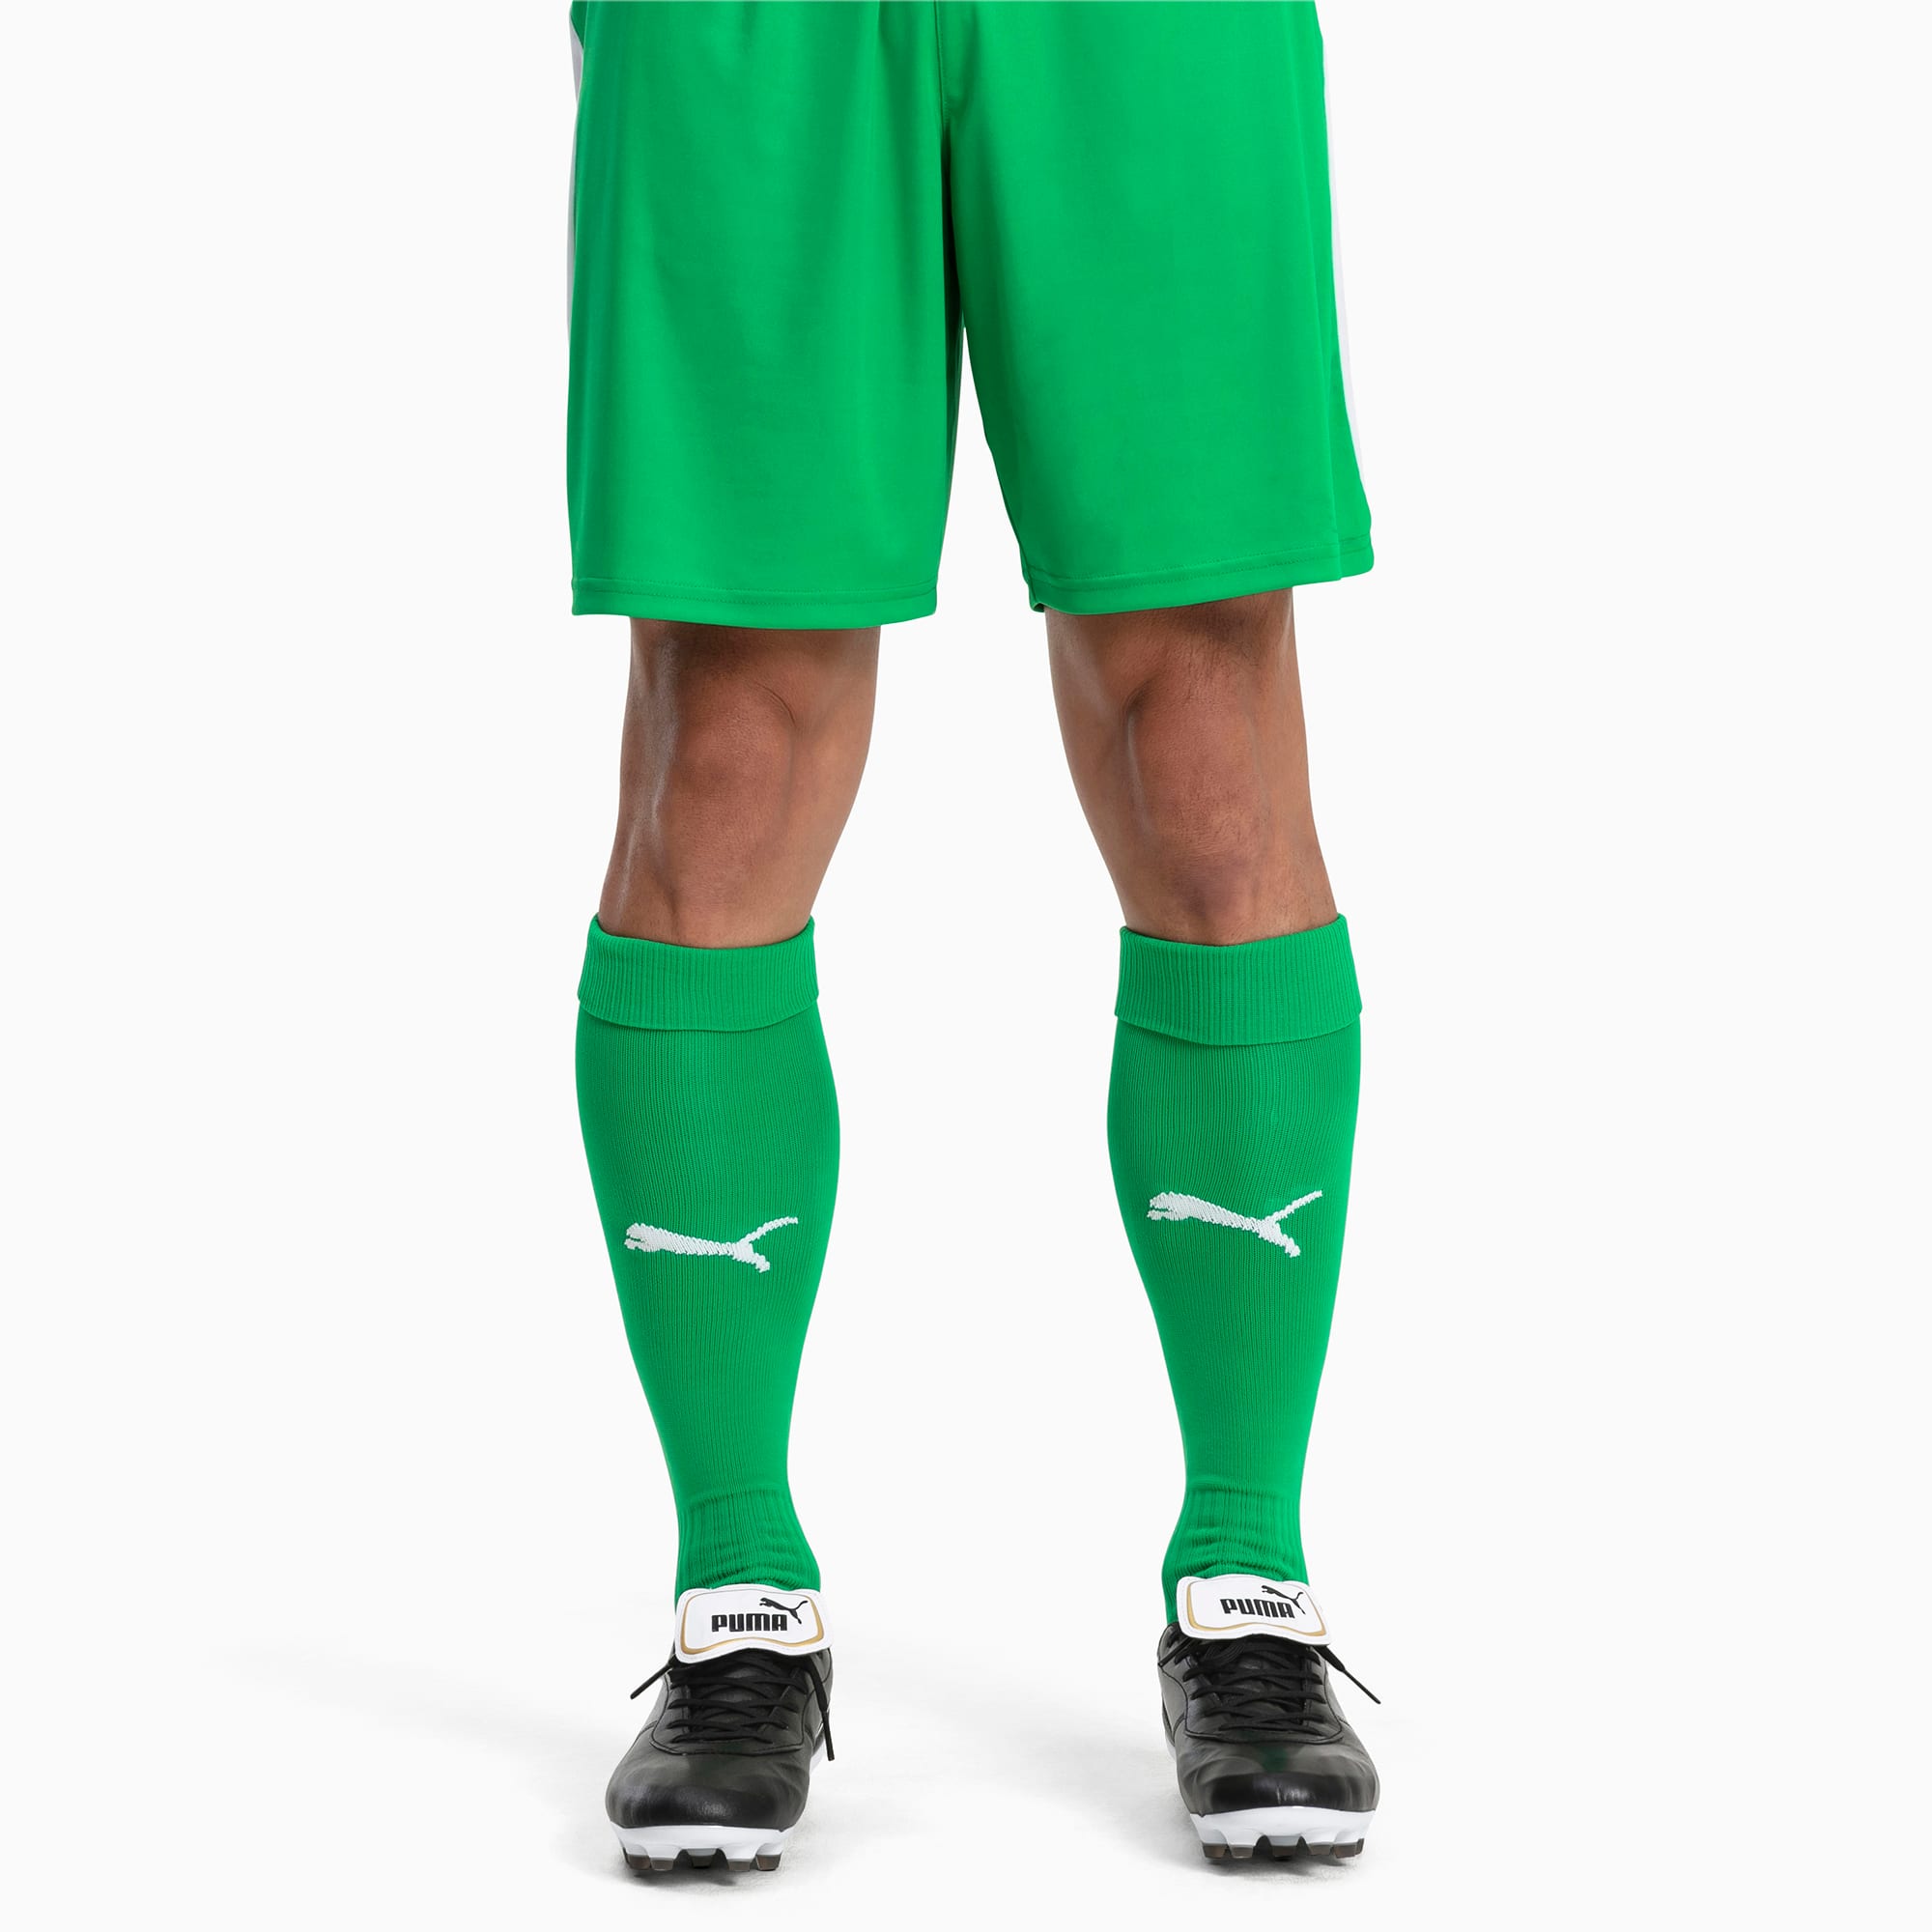 green puma football socks